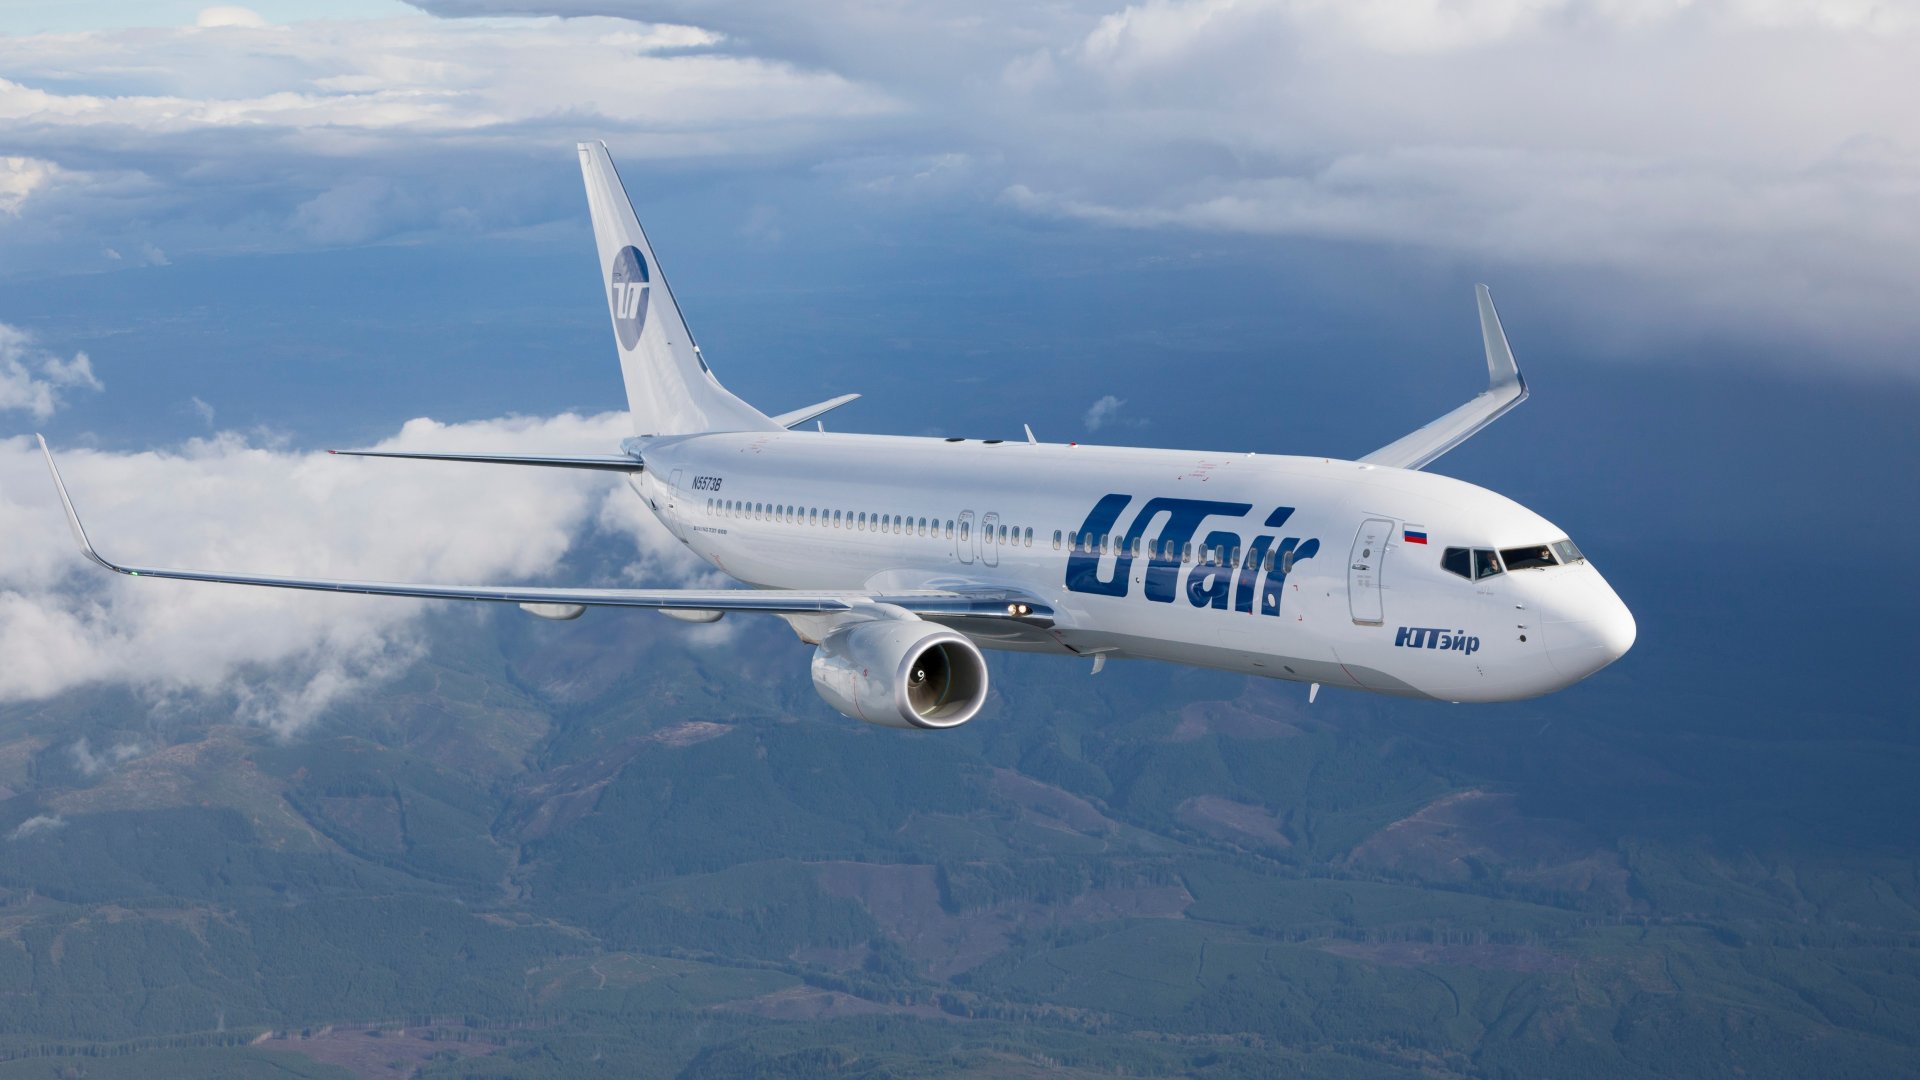 У самолета авиакомпании Utair в воздухе отказал автопилот